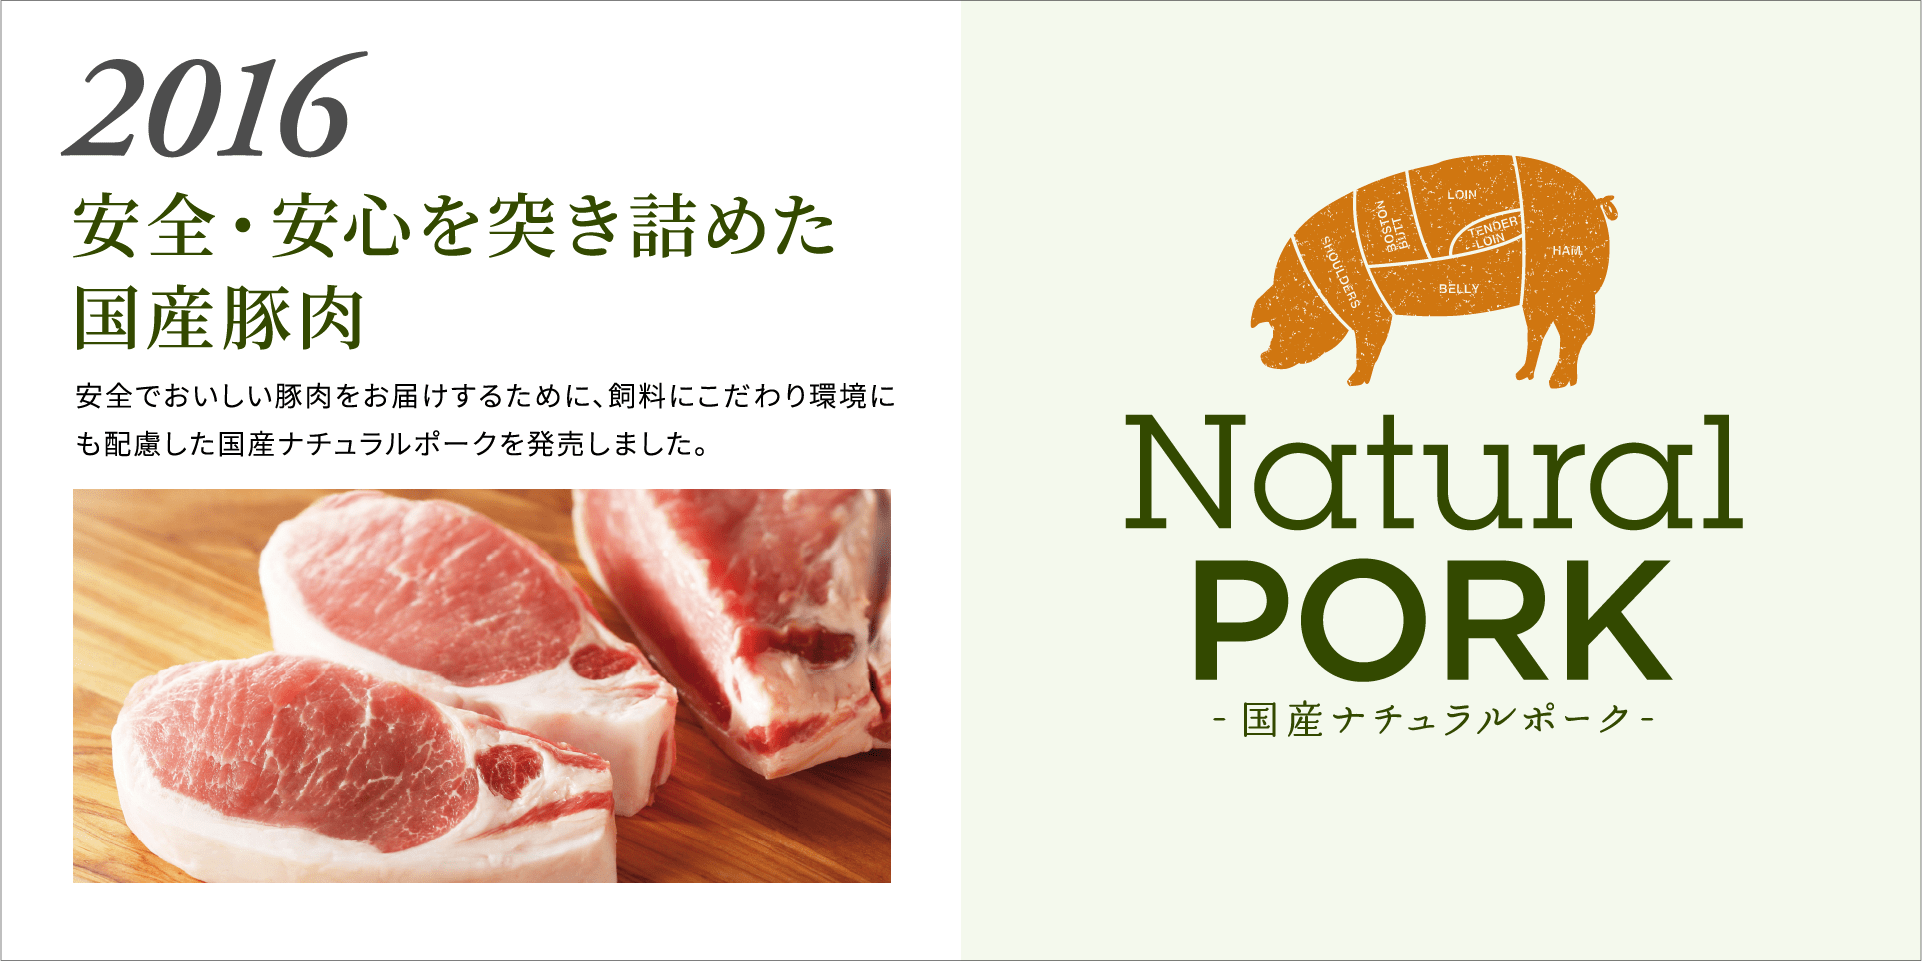 2016 安全・安心を突き詰めた国産豚肉  安全でおいしい豚肉をお届けするために、飼料にこだわり環境にも配慮した国産ナチュラルポークを発売しました。